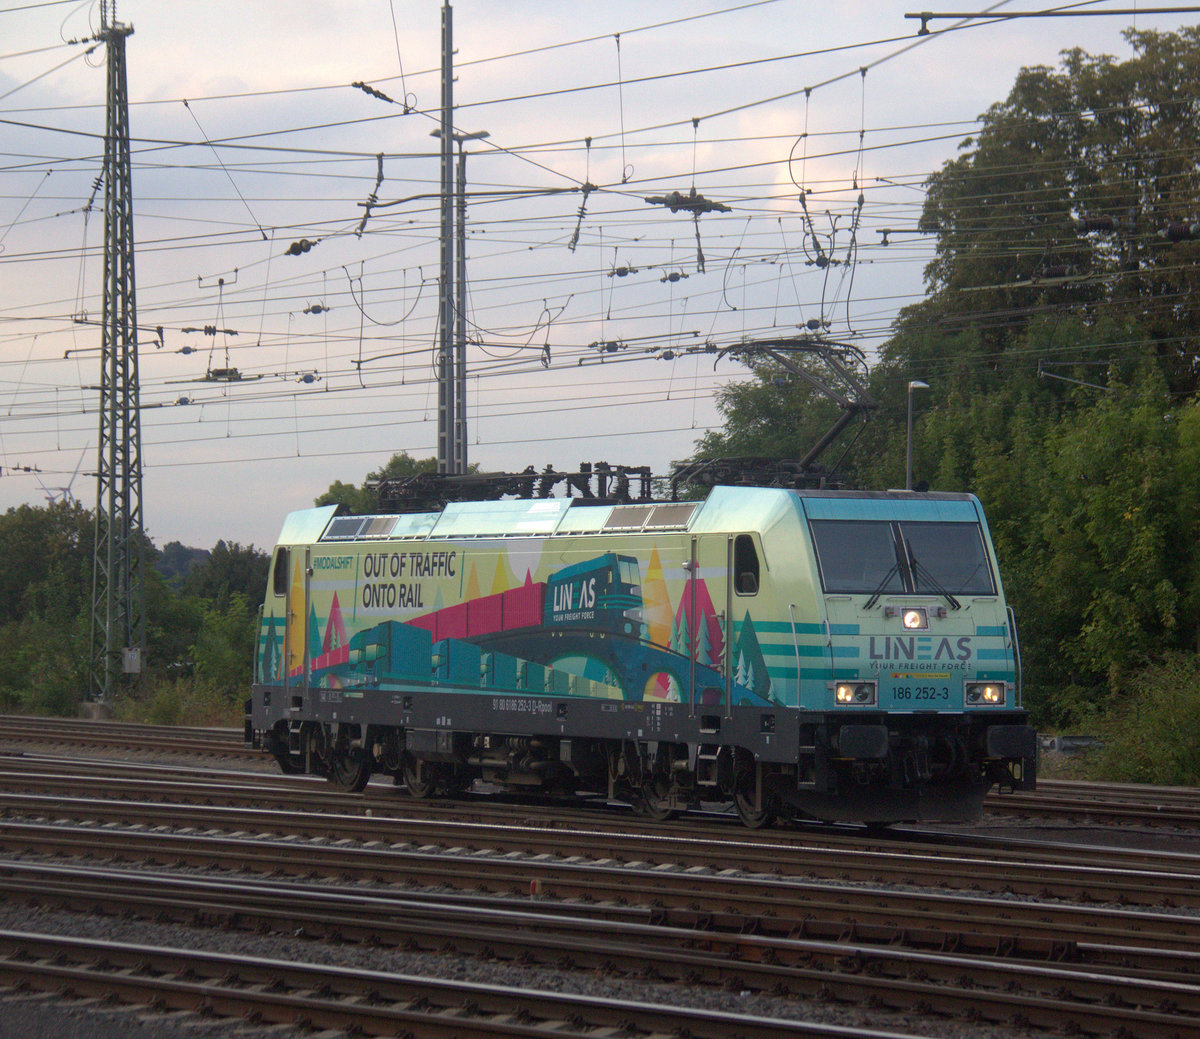 186 252-3 von Lineas rangiert in Aachen-West. 
Aufgenommen vom Bahnsteig in Aachen-West. 
Am Abend vom 13.9.2019.